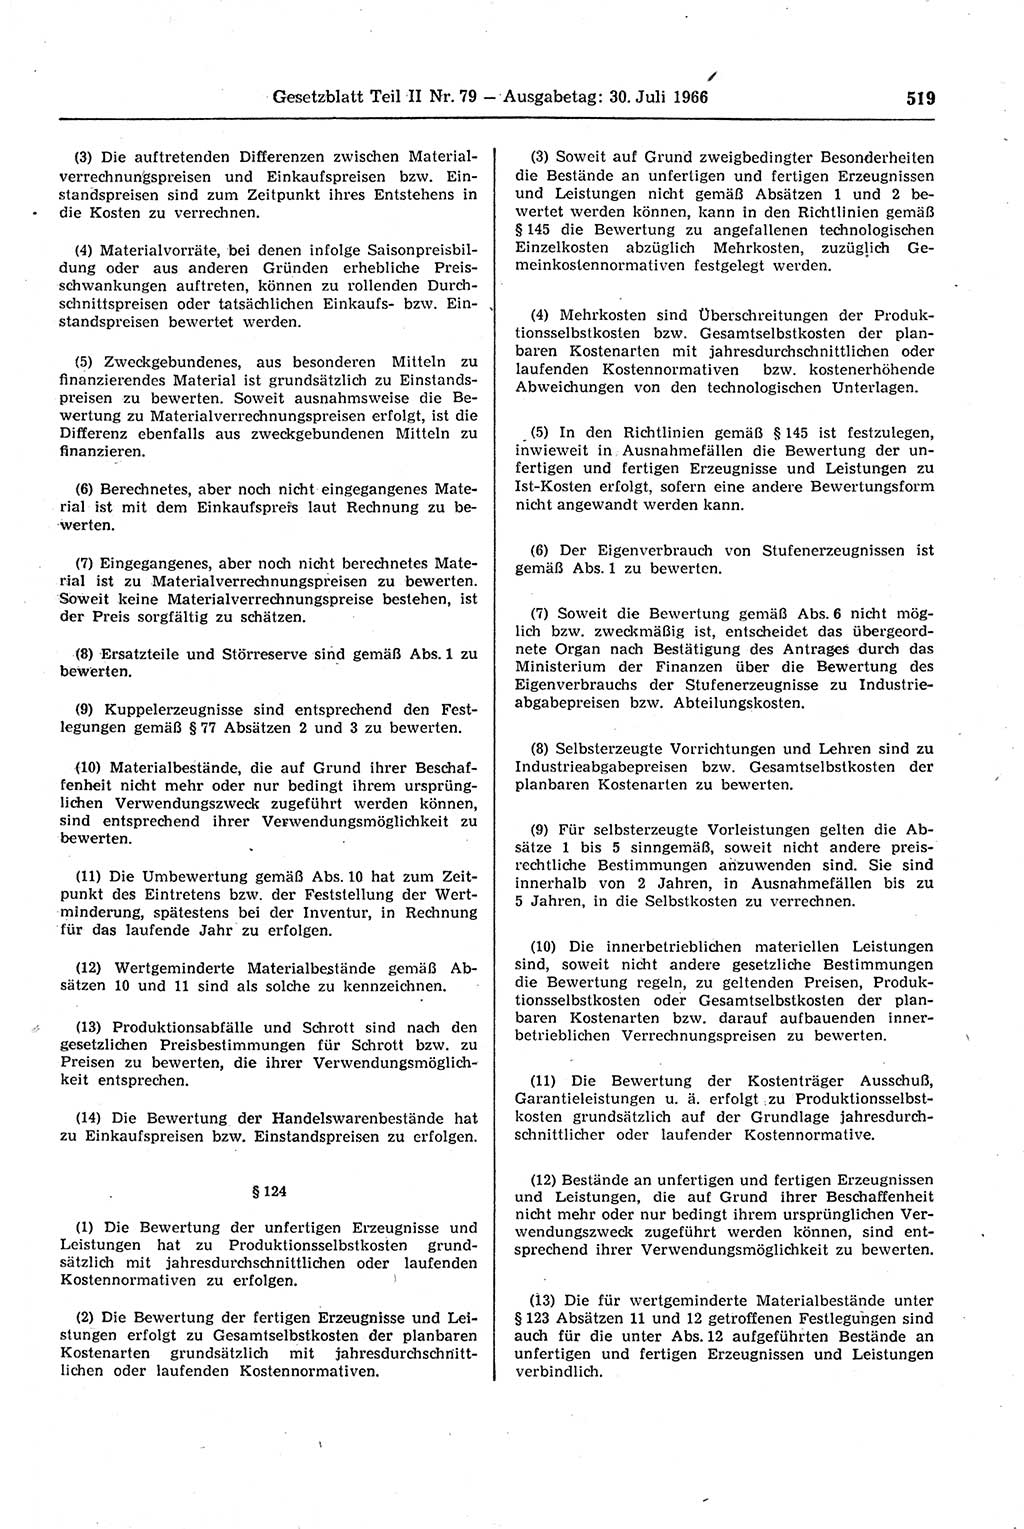 Gesetzblatt (GBl.) der Deutschen Demokratischen Republik (DDR) Teil ⅠⅠ 1966, Seite 519 (GBl. DDR ⅠⅠ 1966, S. 519)